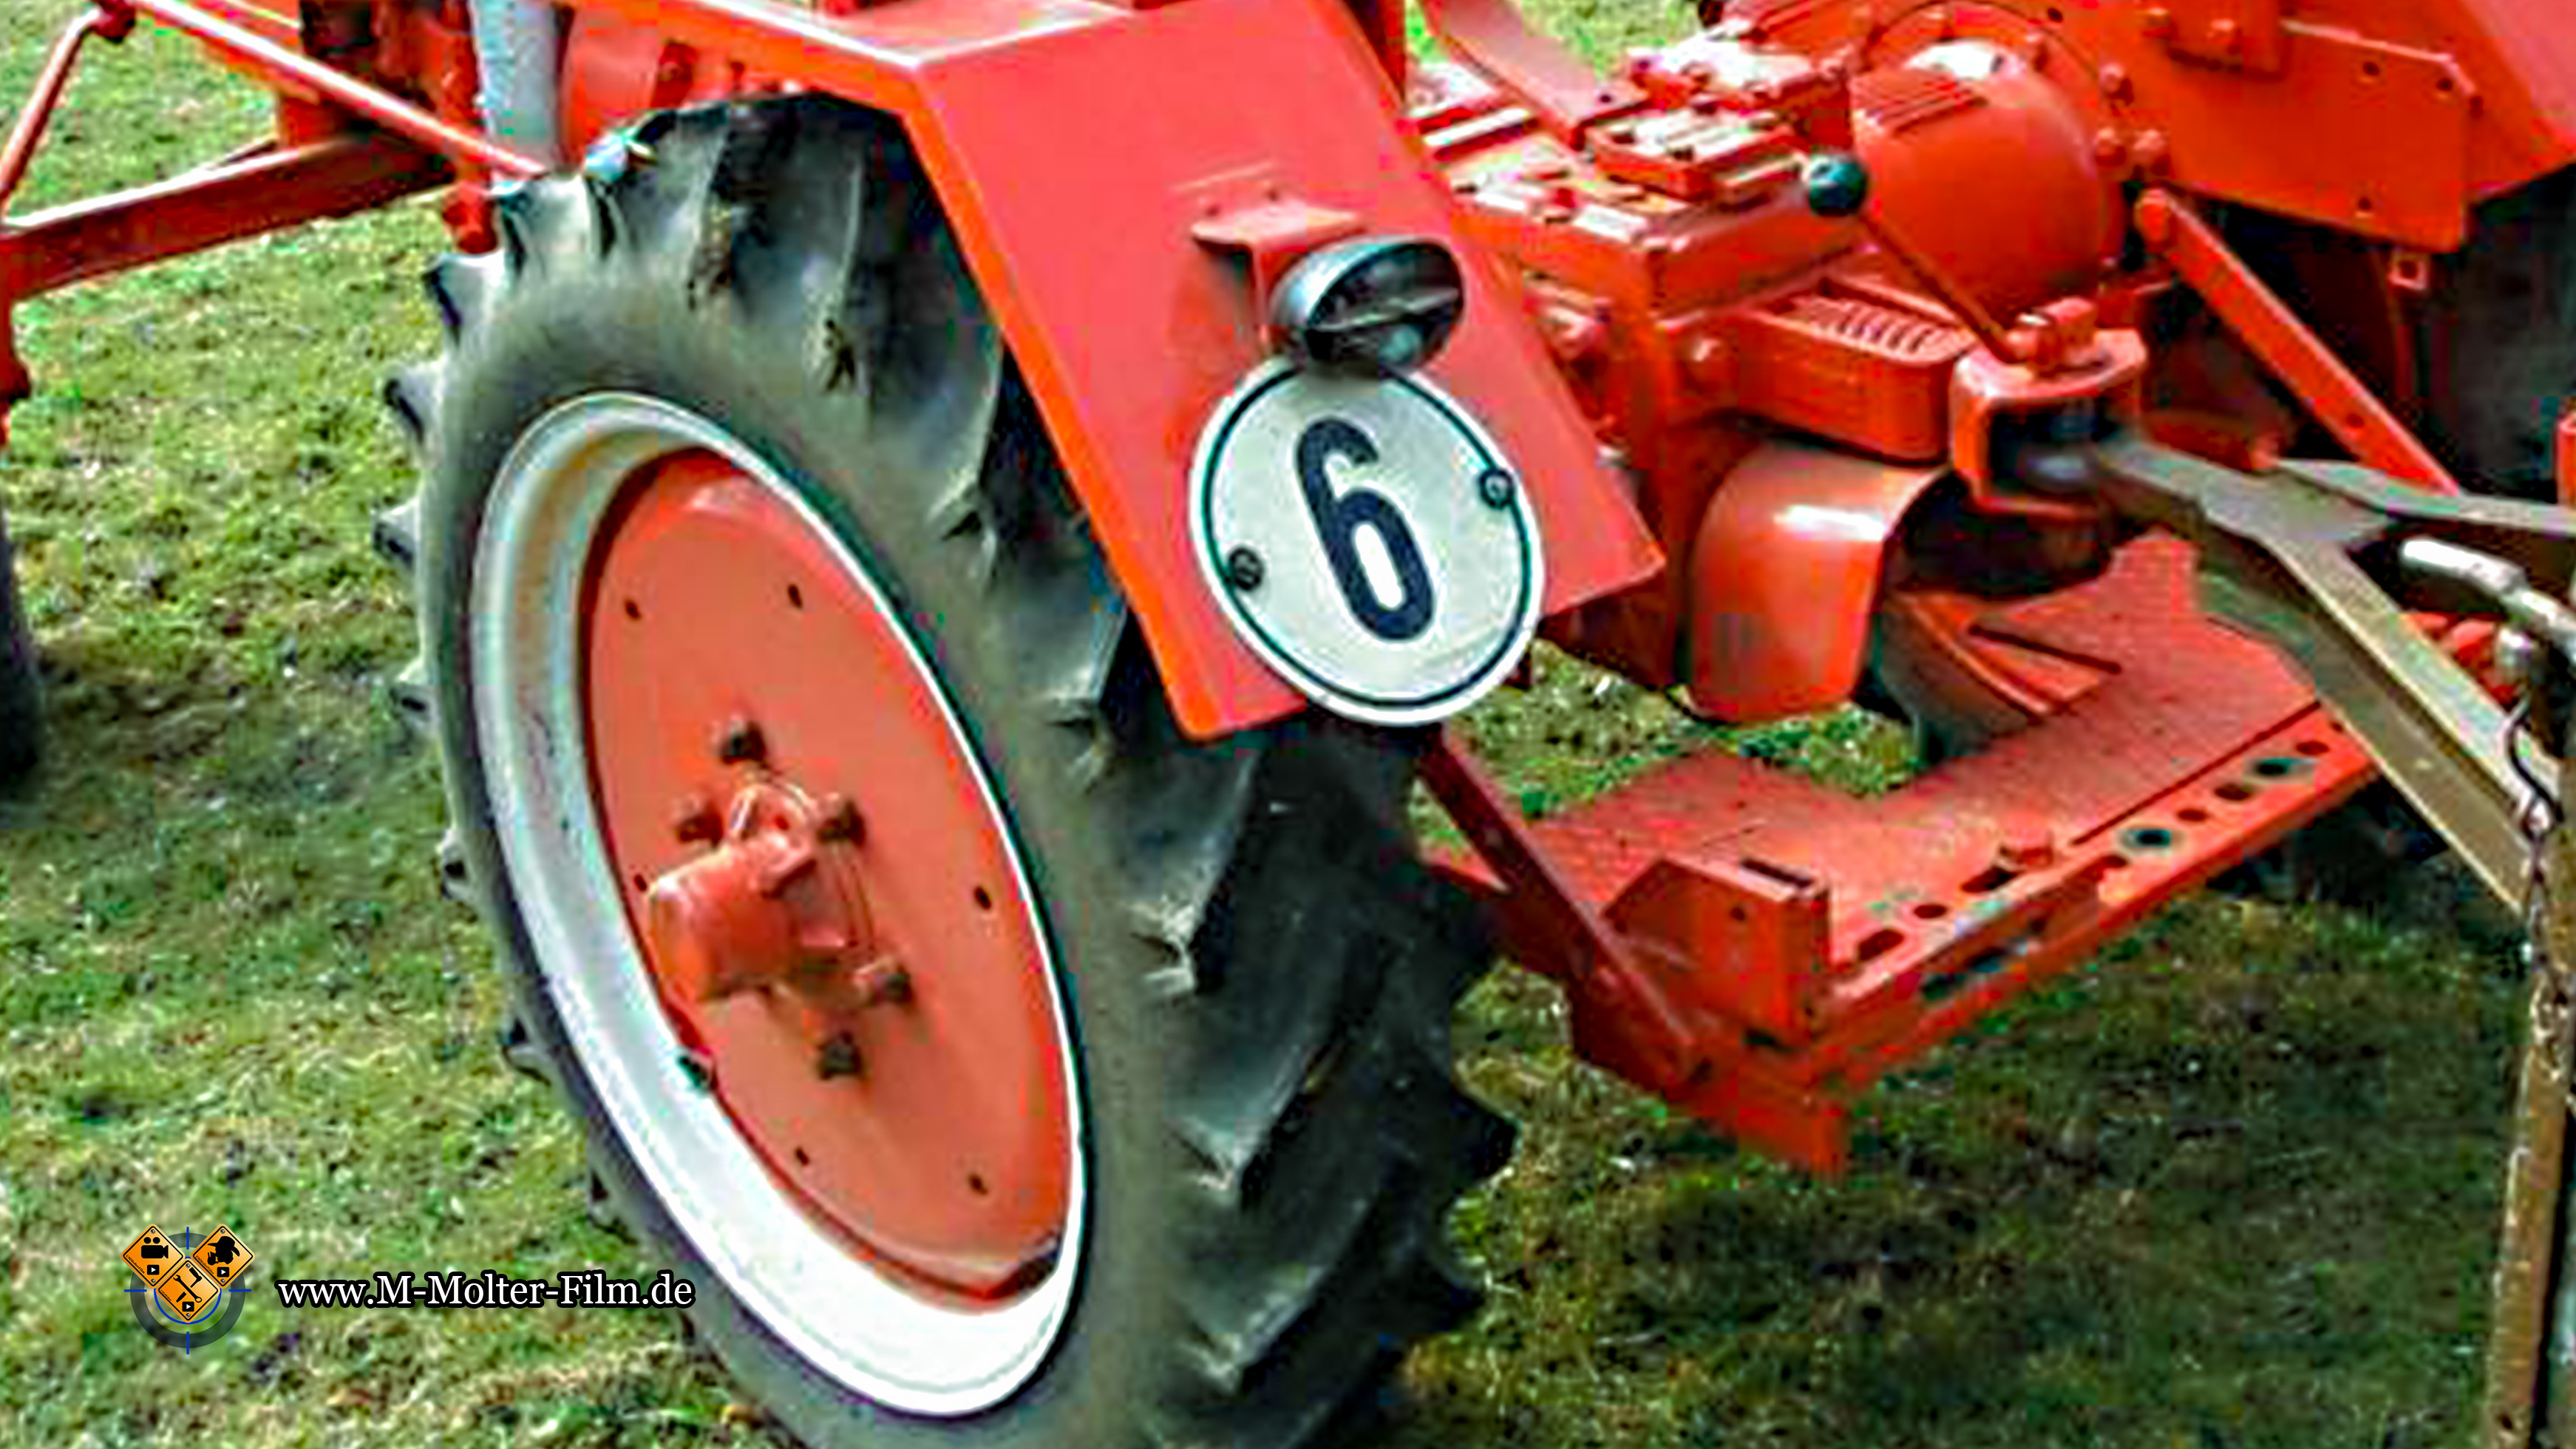 6 Km/h Schild am Traktor – Was ist erlaubt und was nicht – Rhönkanal, Schafe Videos Online